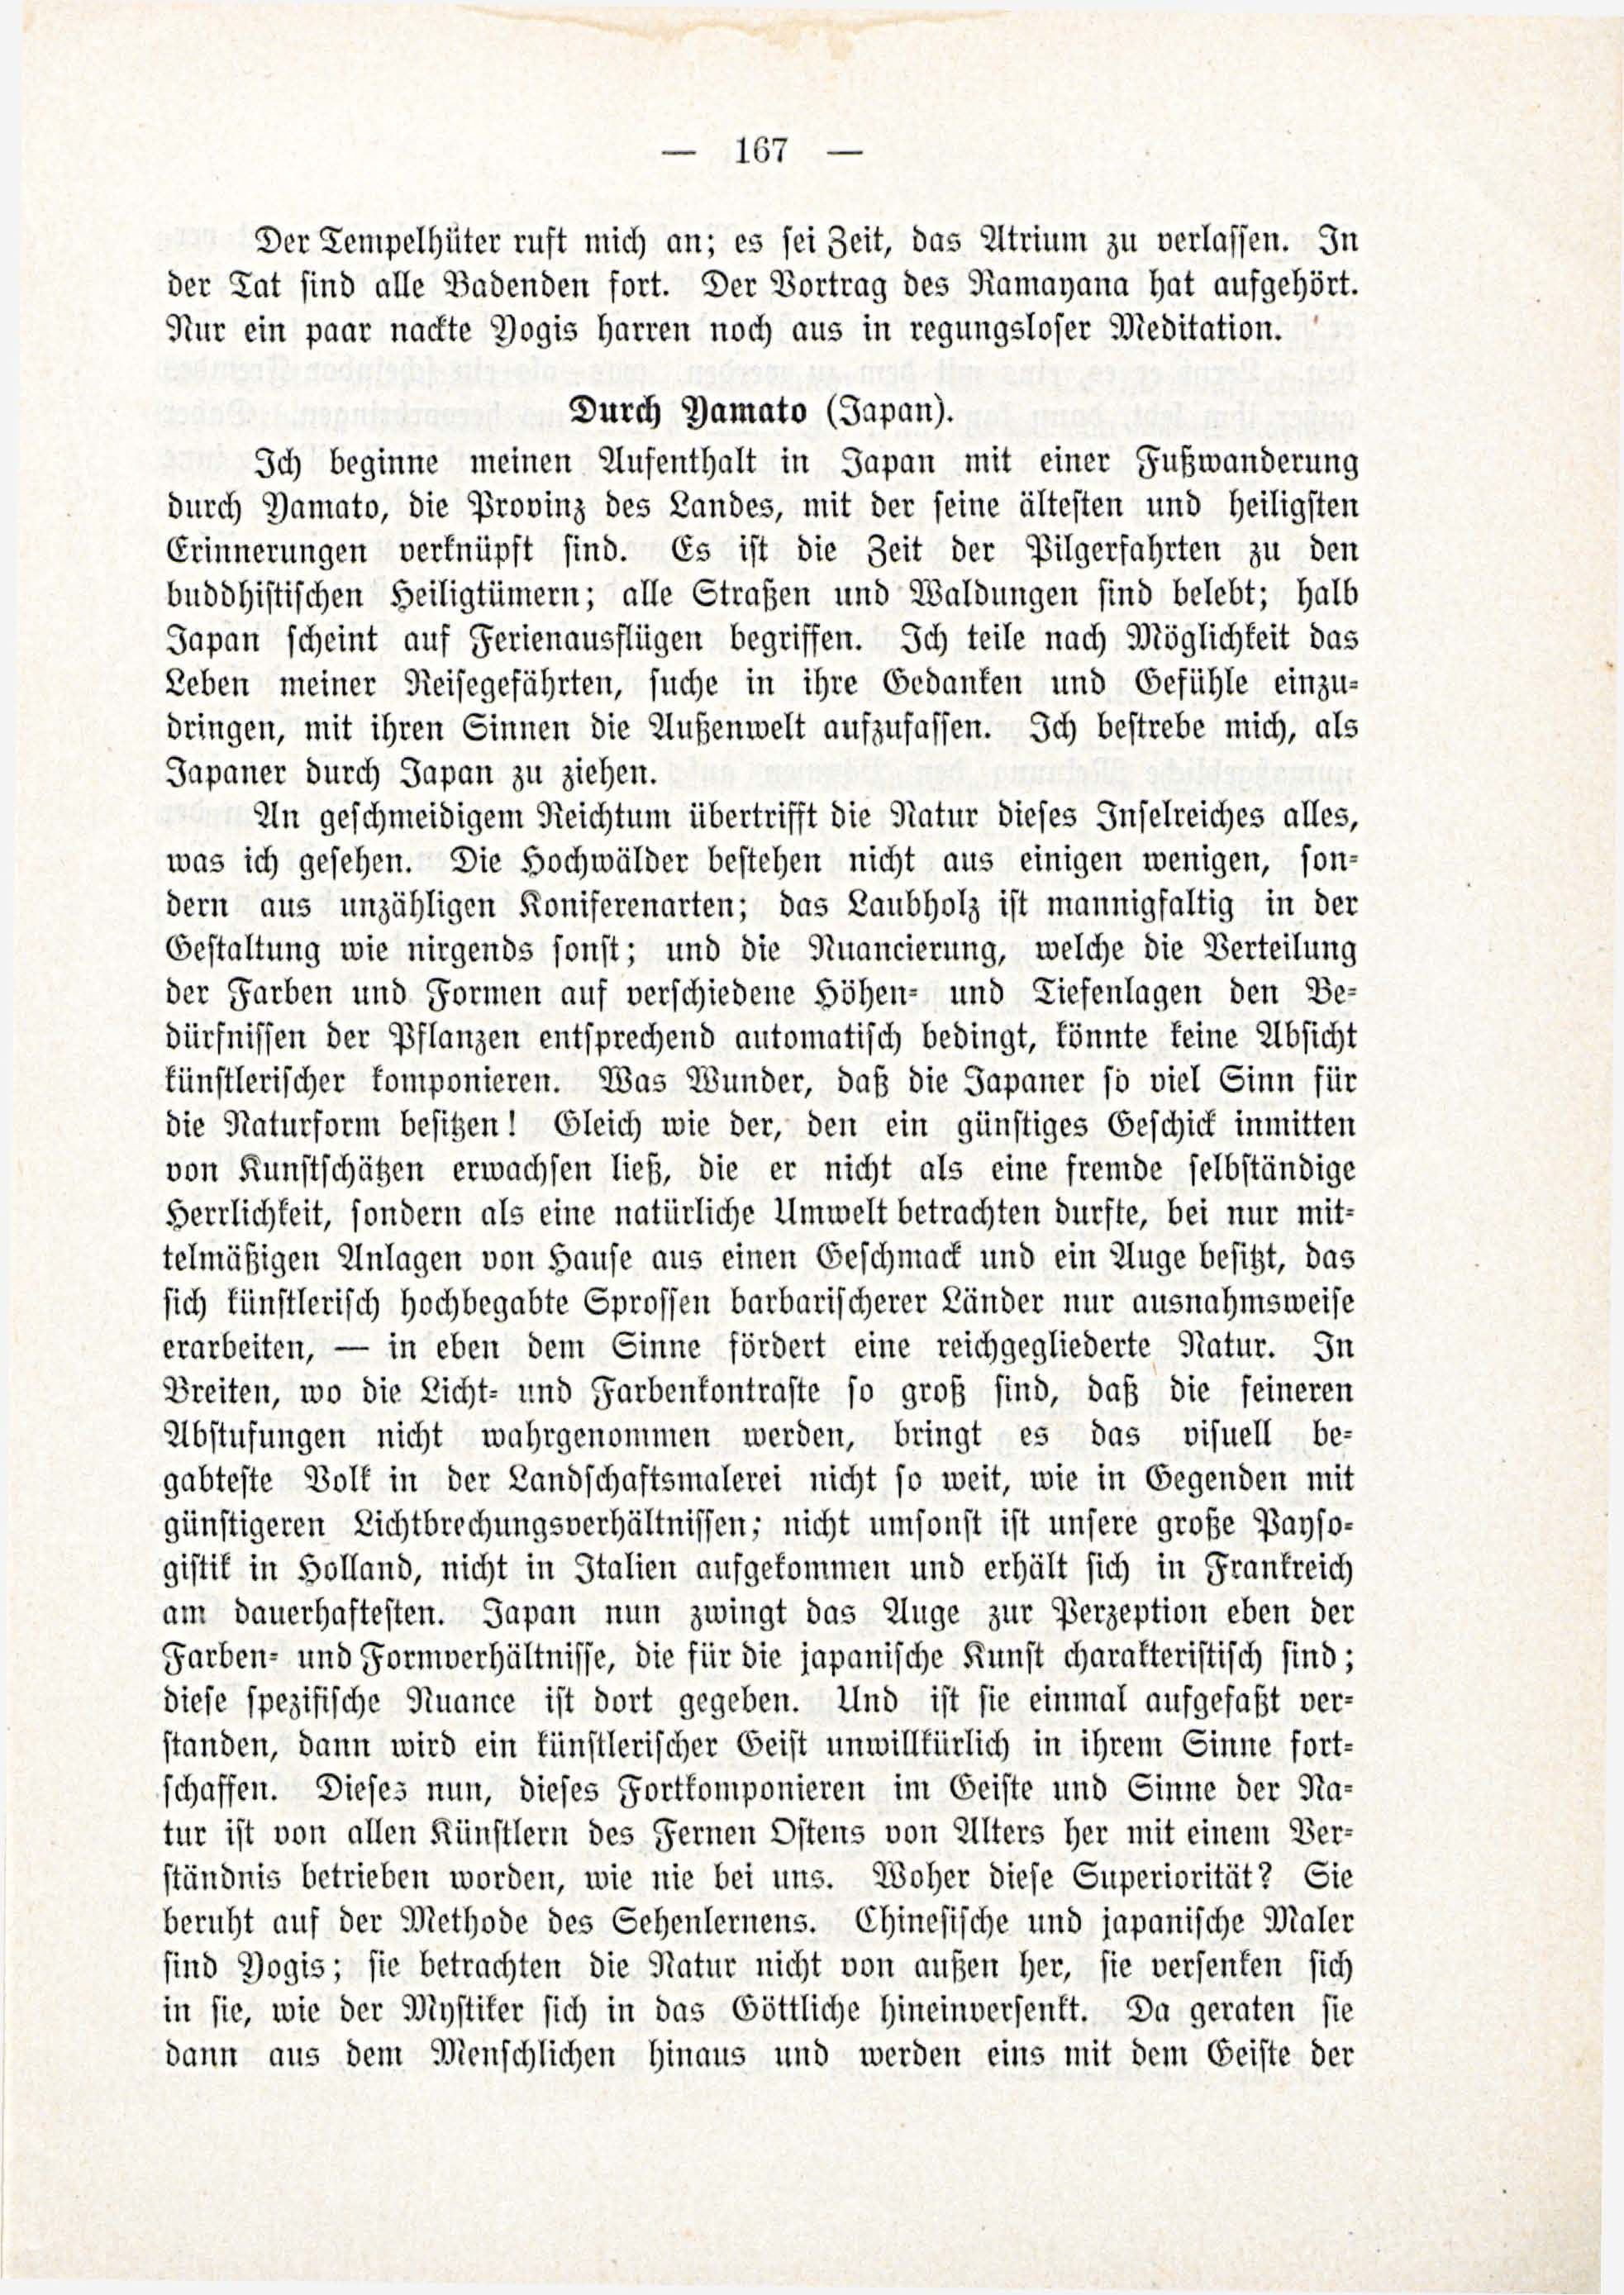 Deutsche Monatsschrift für Russland [3/03] (1914) | 13. (167) Main body of text